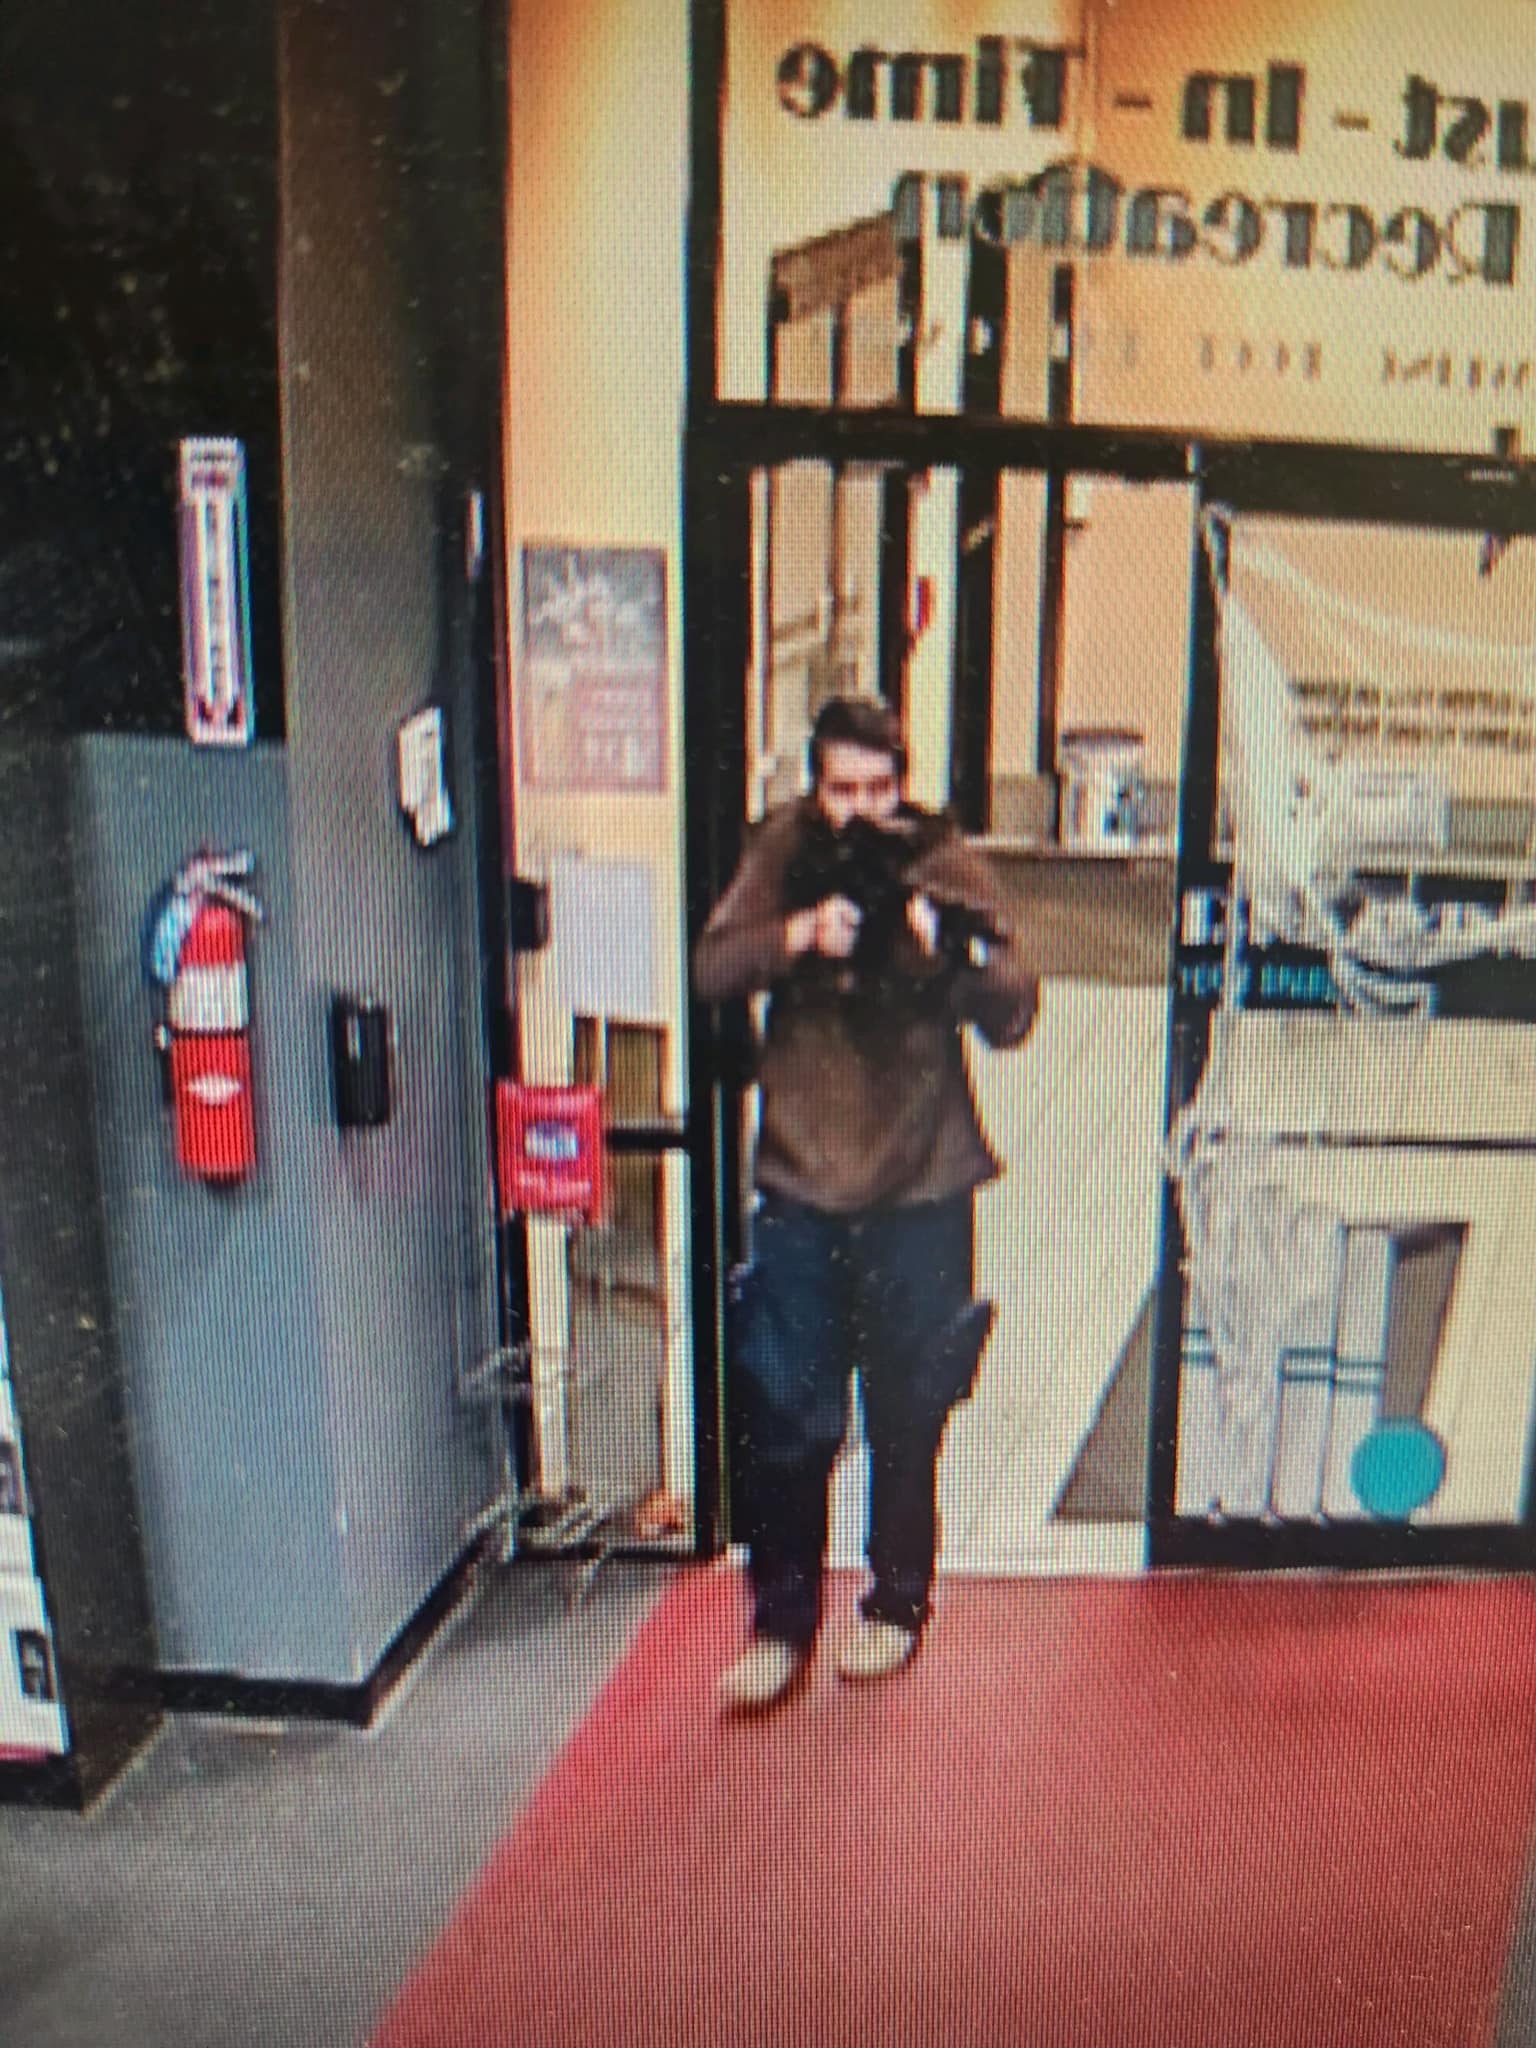 25일(현지시간) 미국 메인주 루이스턴에서 신원이 확인되지 않은 한 남성이 총을 들고 있고 있는 모습이 포착된 영상 이미지가 보인다. 이 사진은 현지 경찰 당국이 배포했다. 2023.10.25 앤드로스코긴 카운티 보안관 사무실 제공